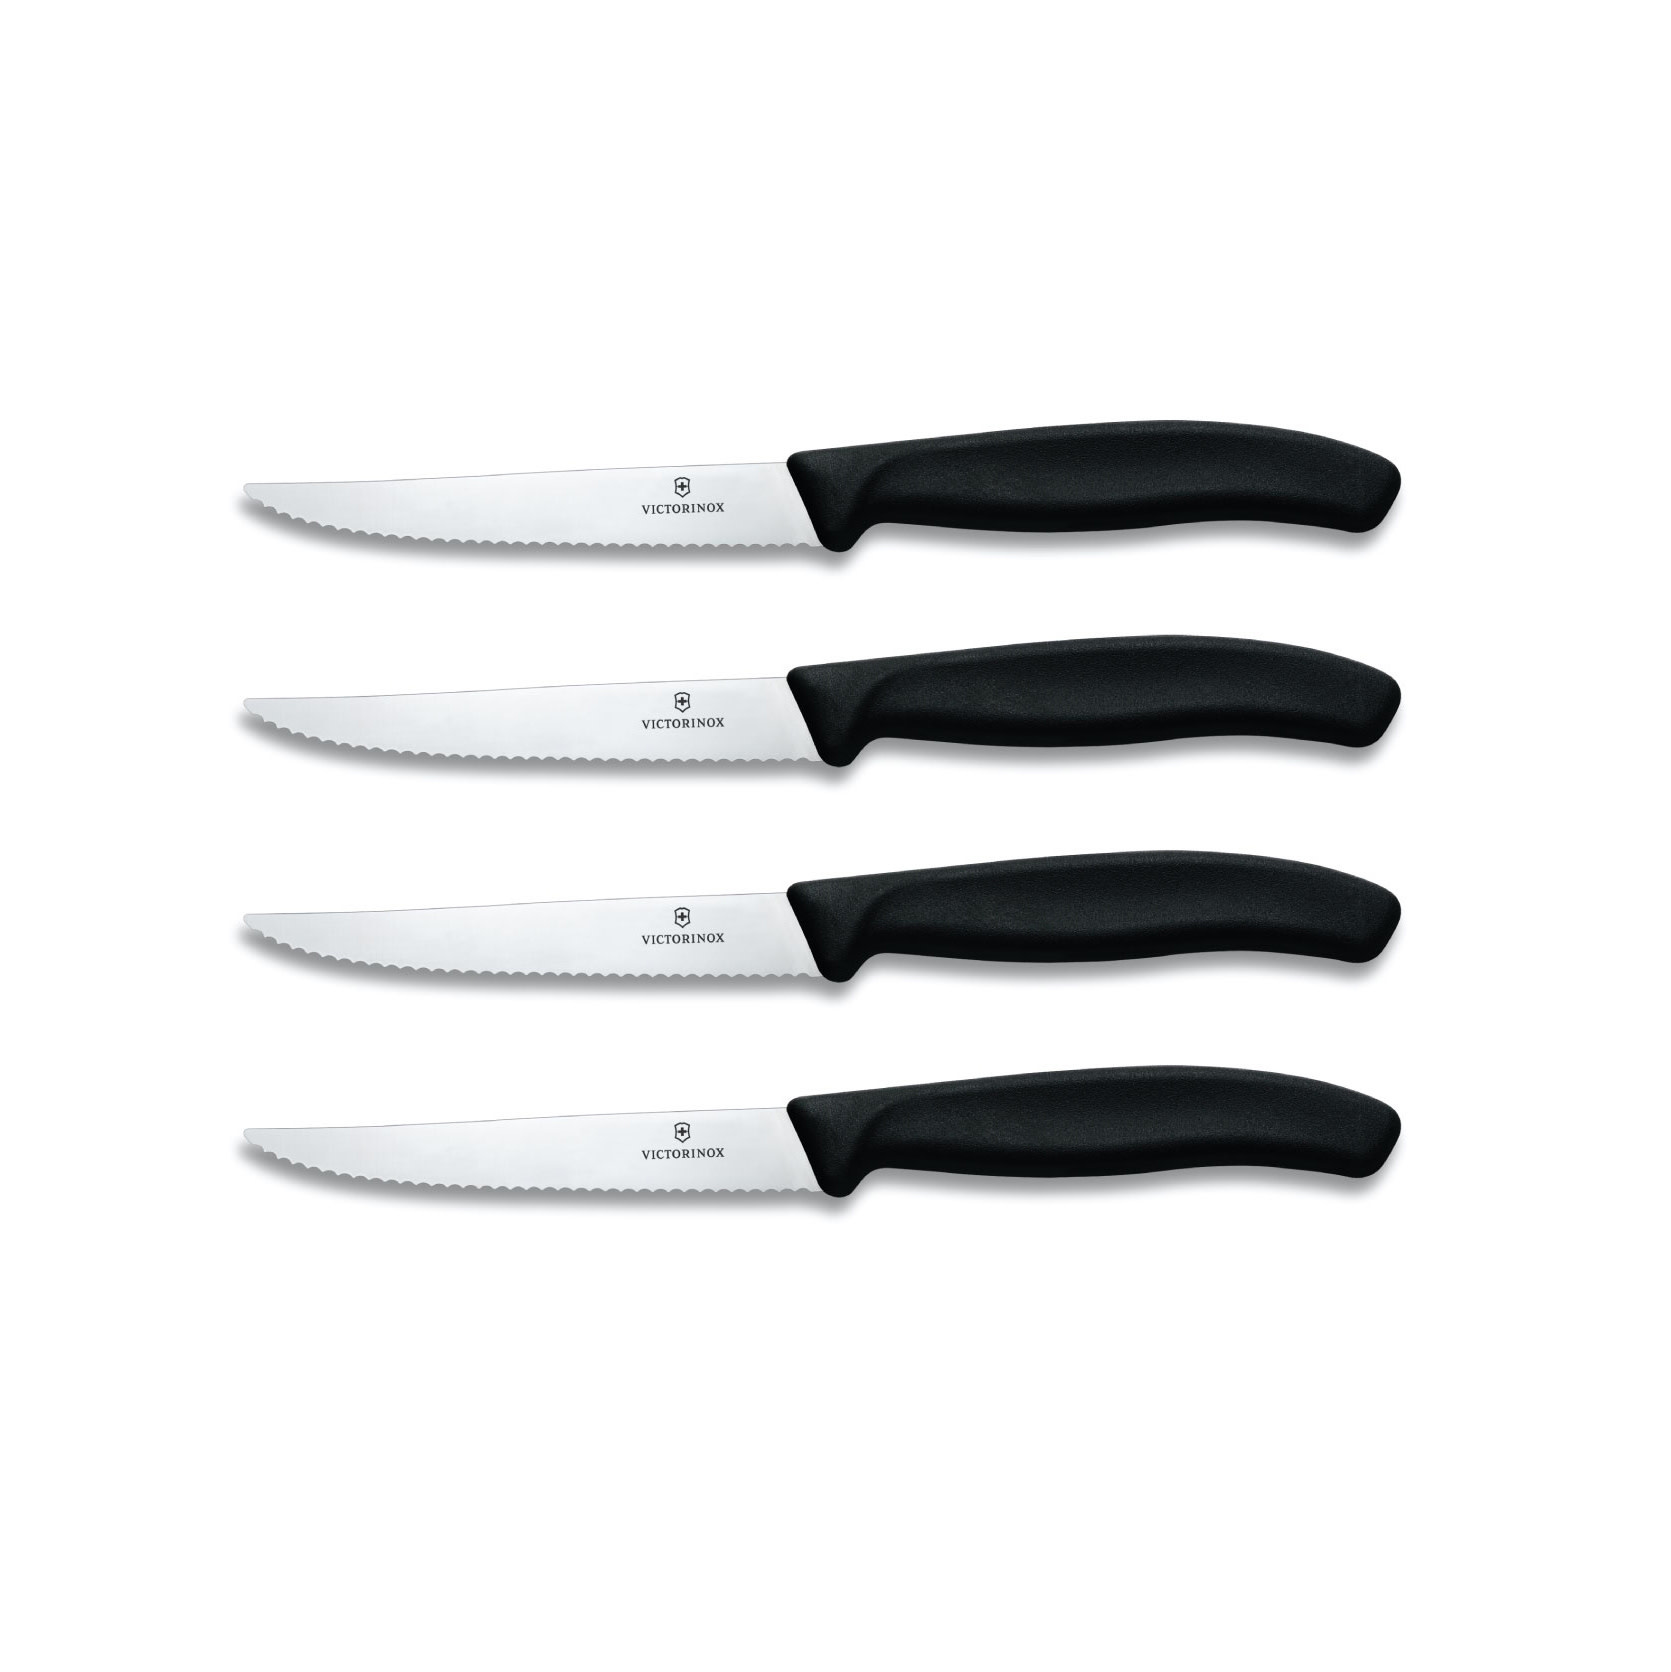 6 - 5 Steak Knives